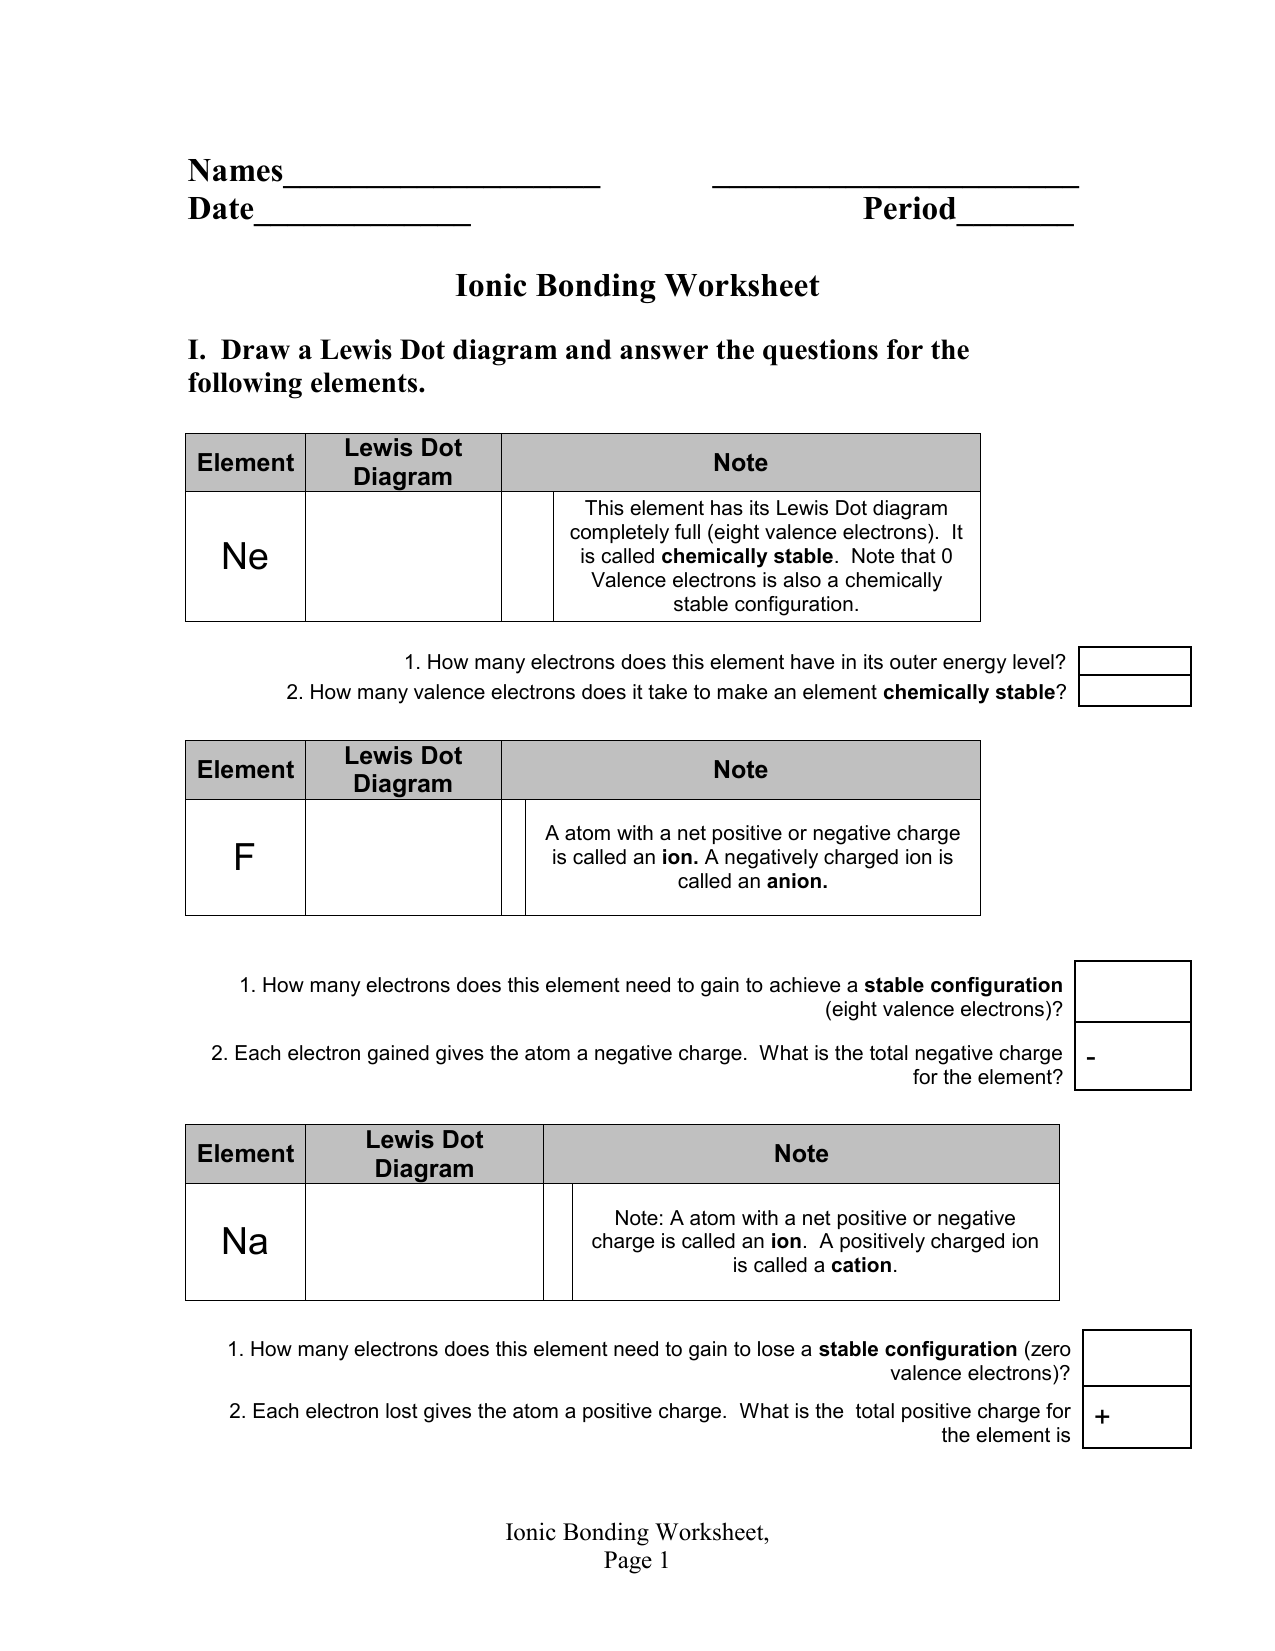 Ionic Bonding Worksheet For Ionic Bonding Worksheet Answers